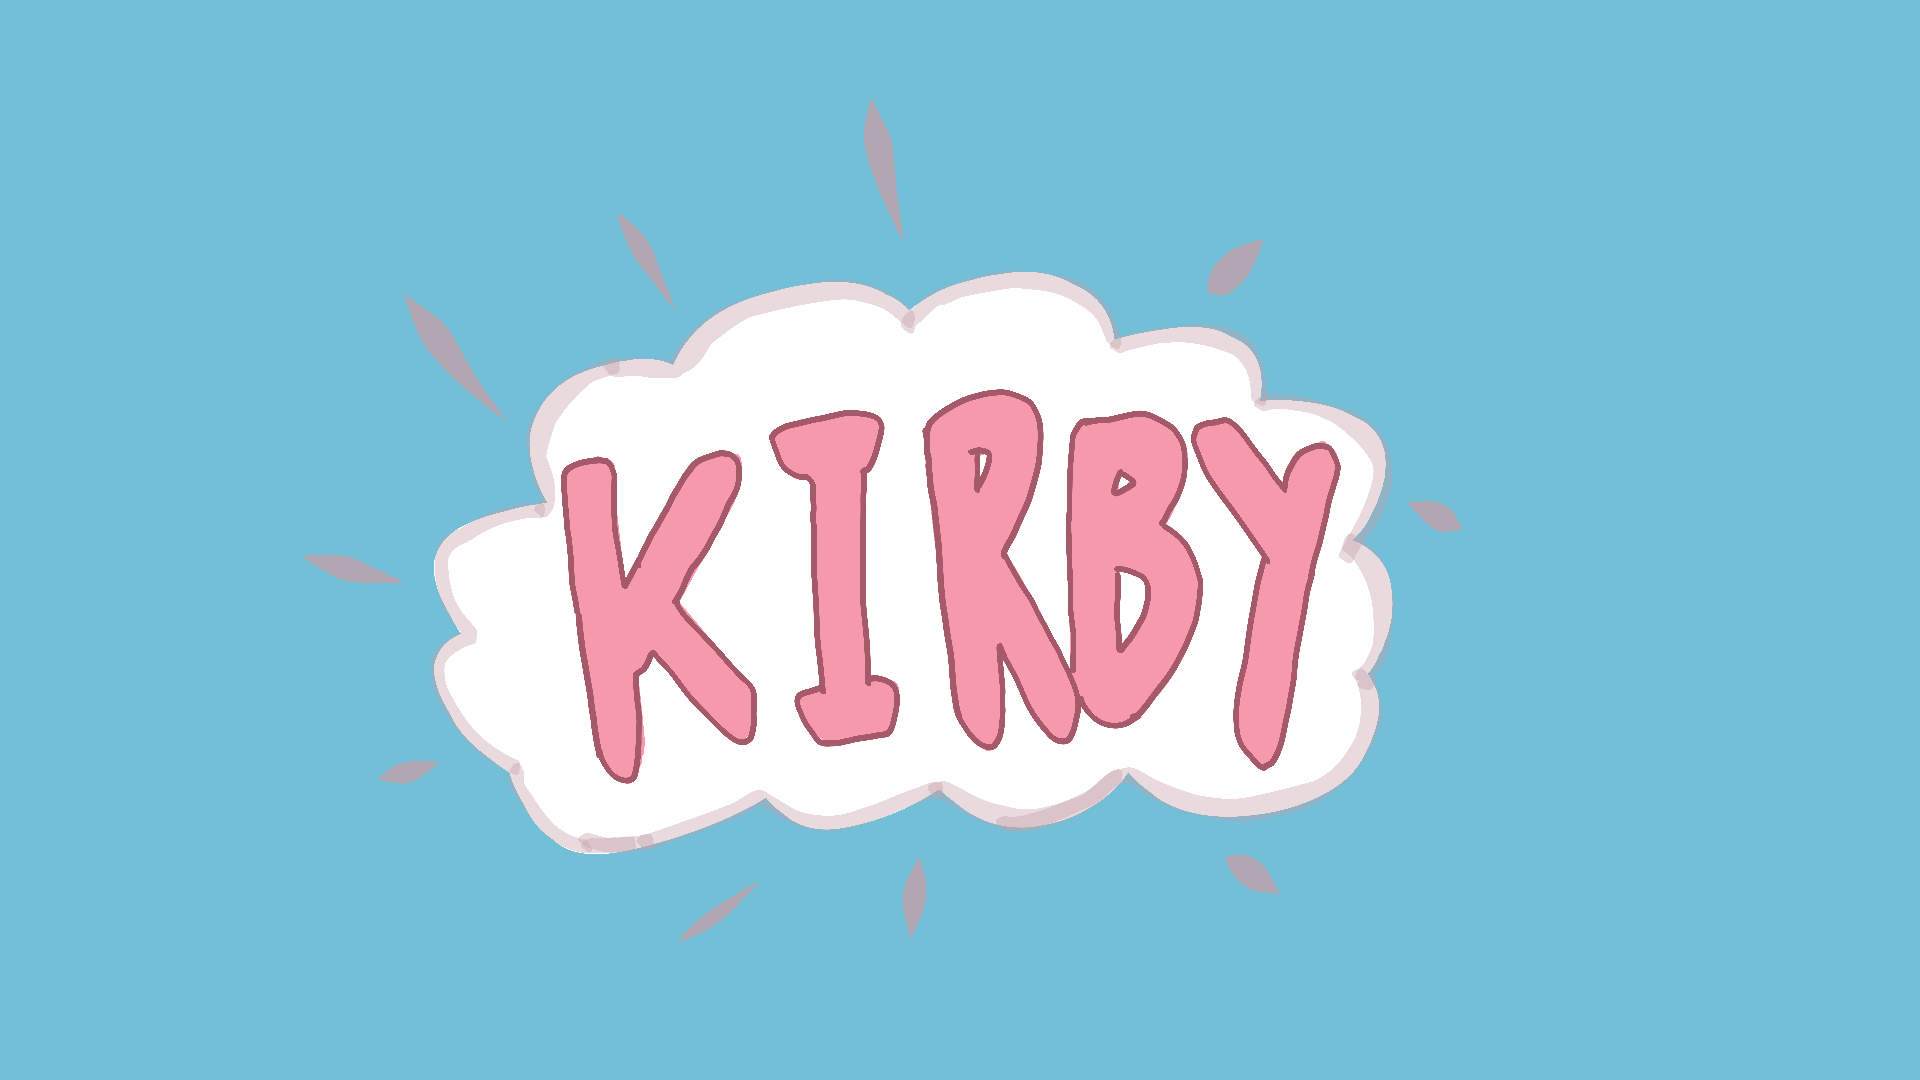 "Kirby", a Pac-Man Clone